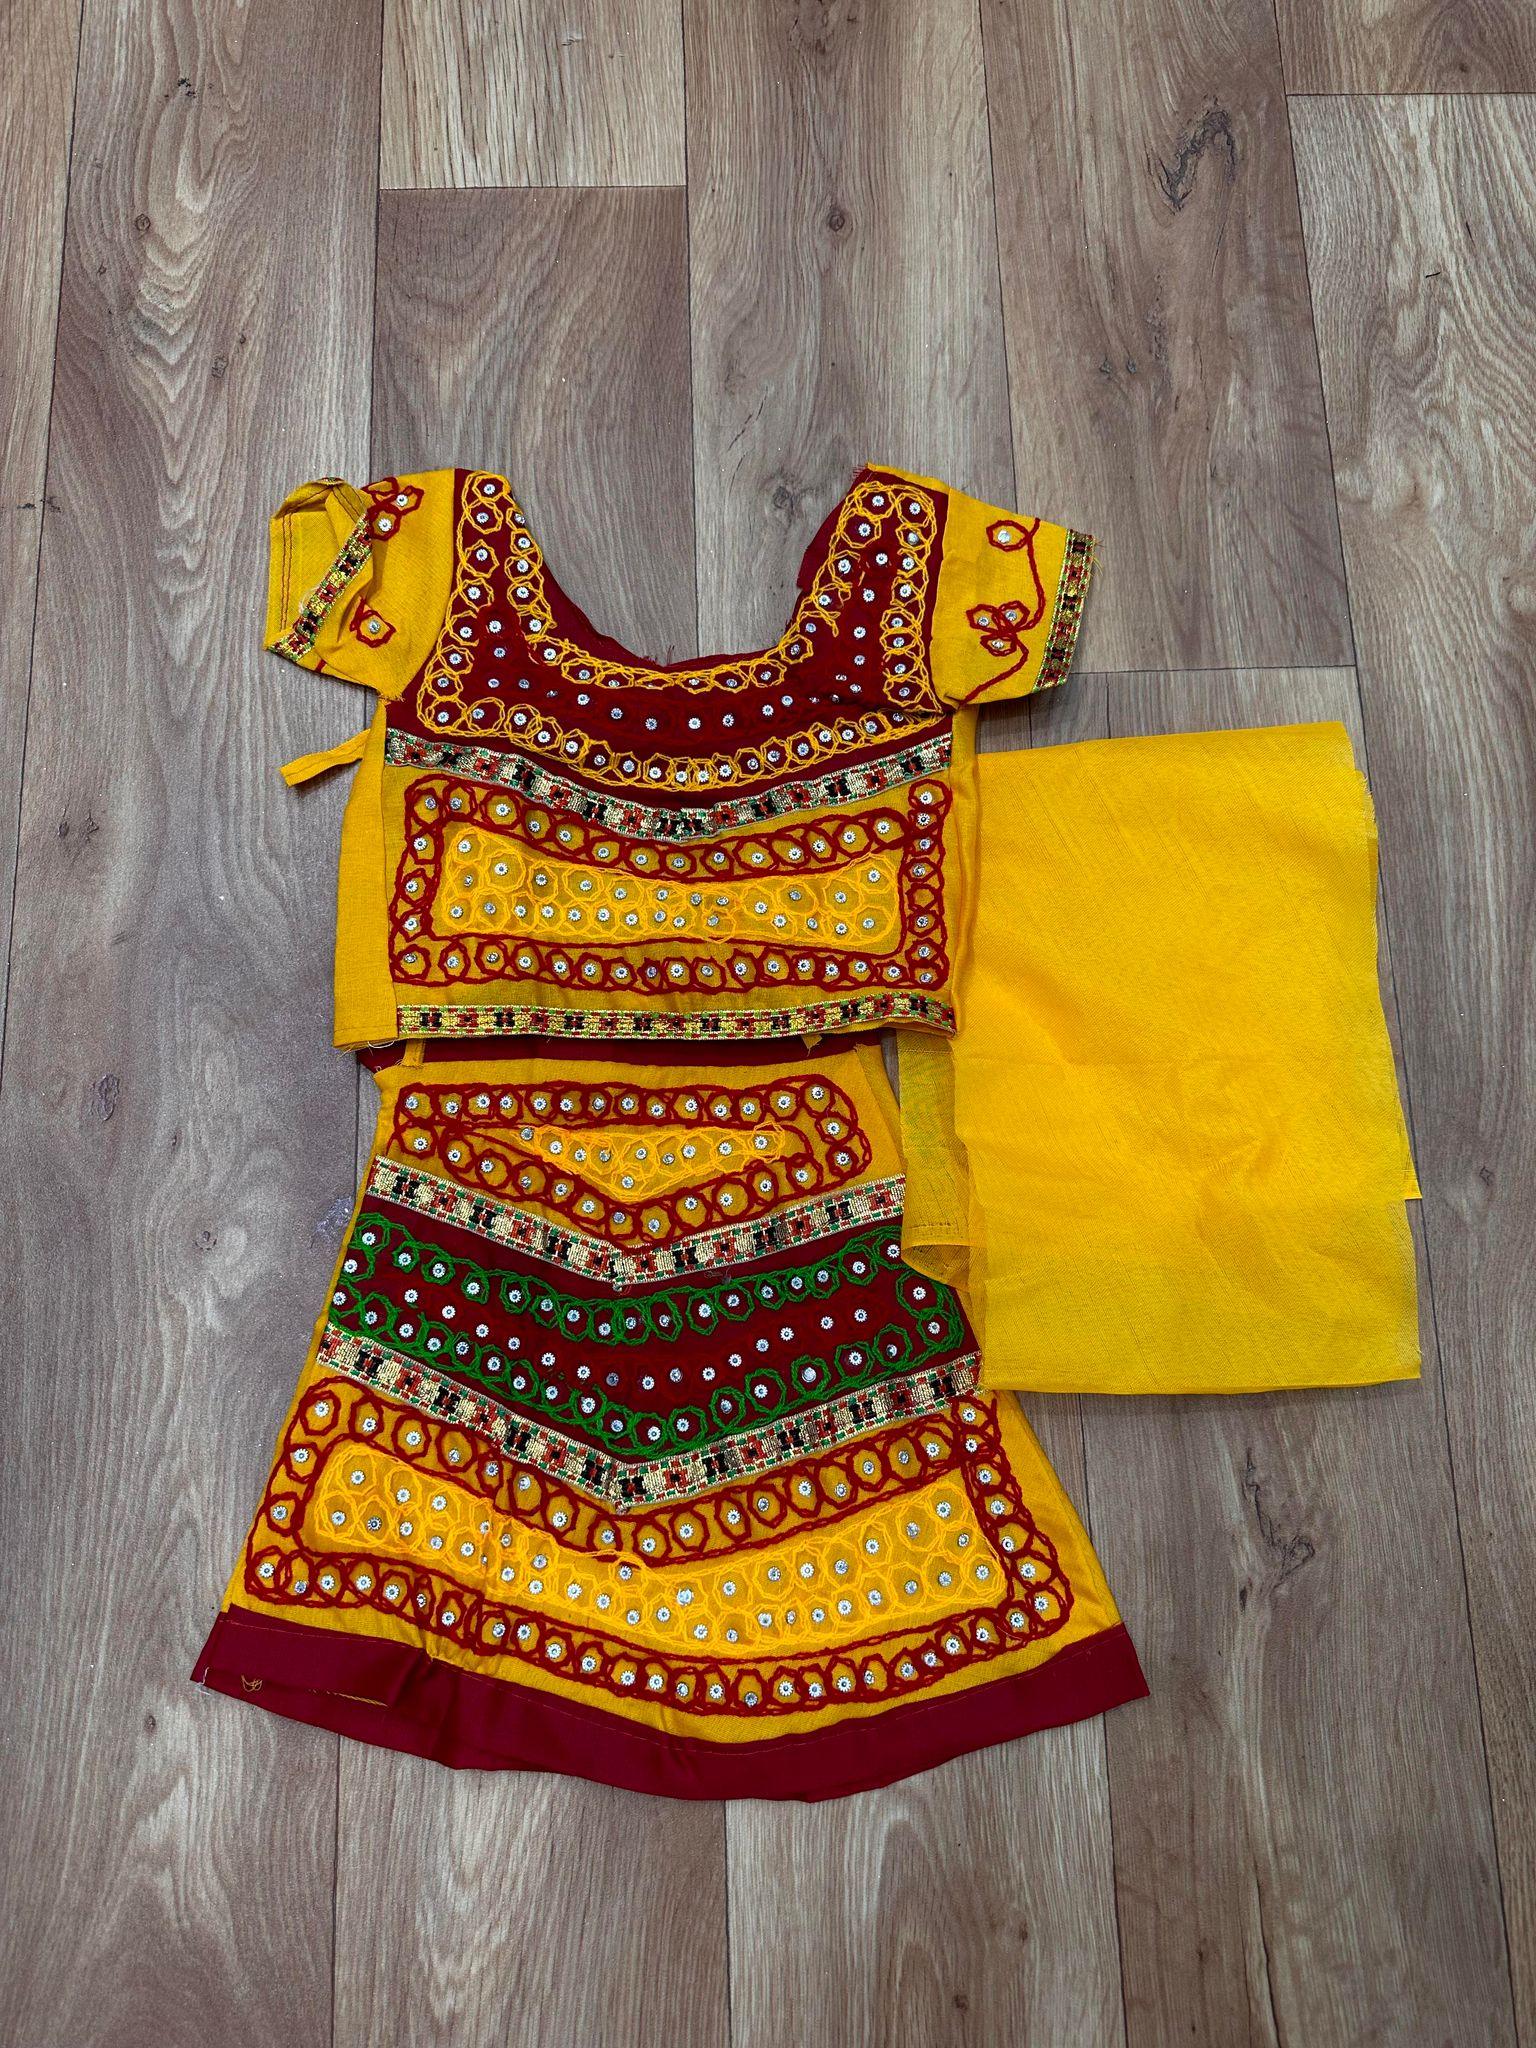 Radha Gopal Fancy... - Radha Gopal Fancy dress and costumes